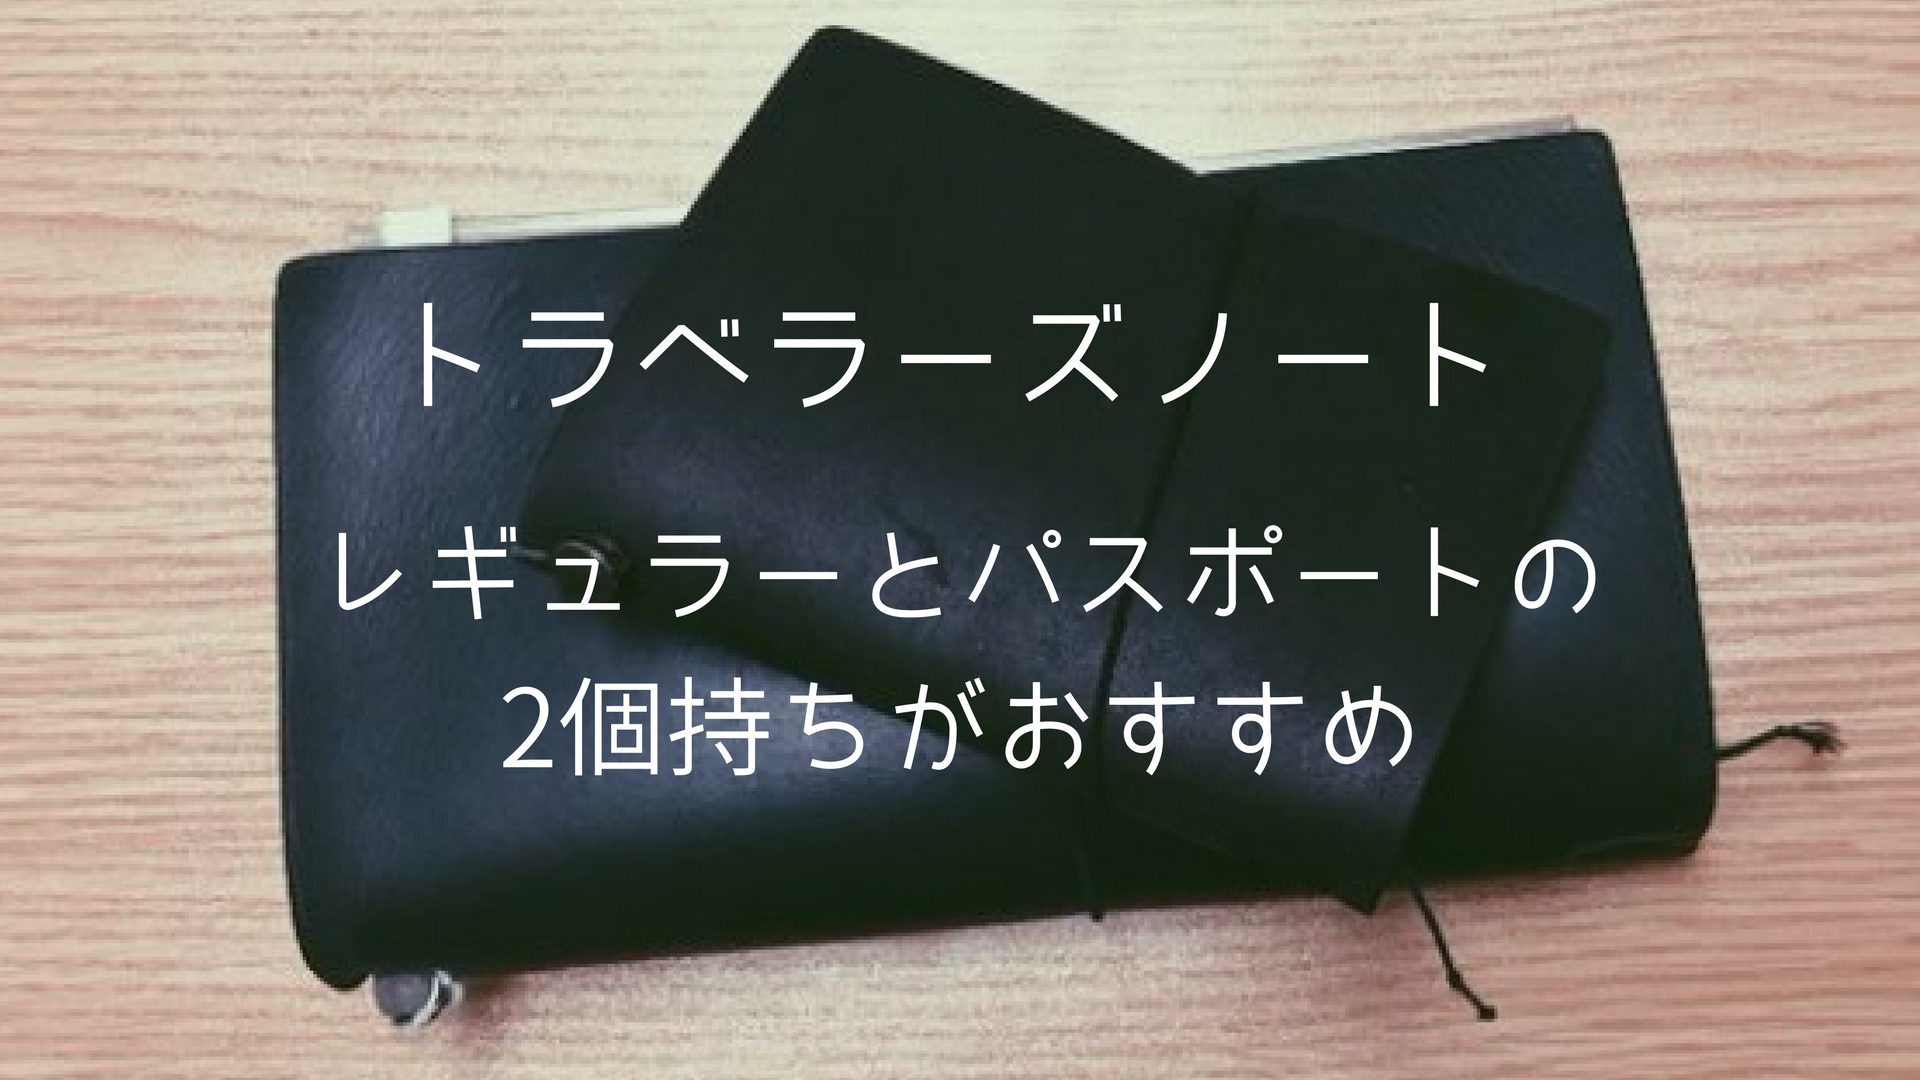 360円 【おしゃれ】 DKLさん専用 トラベラーズノート パスポートサイズ